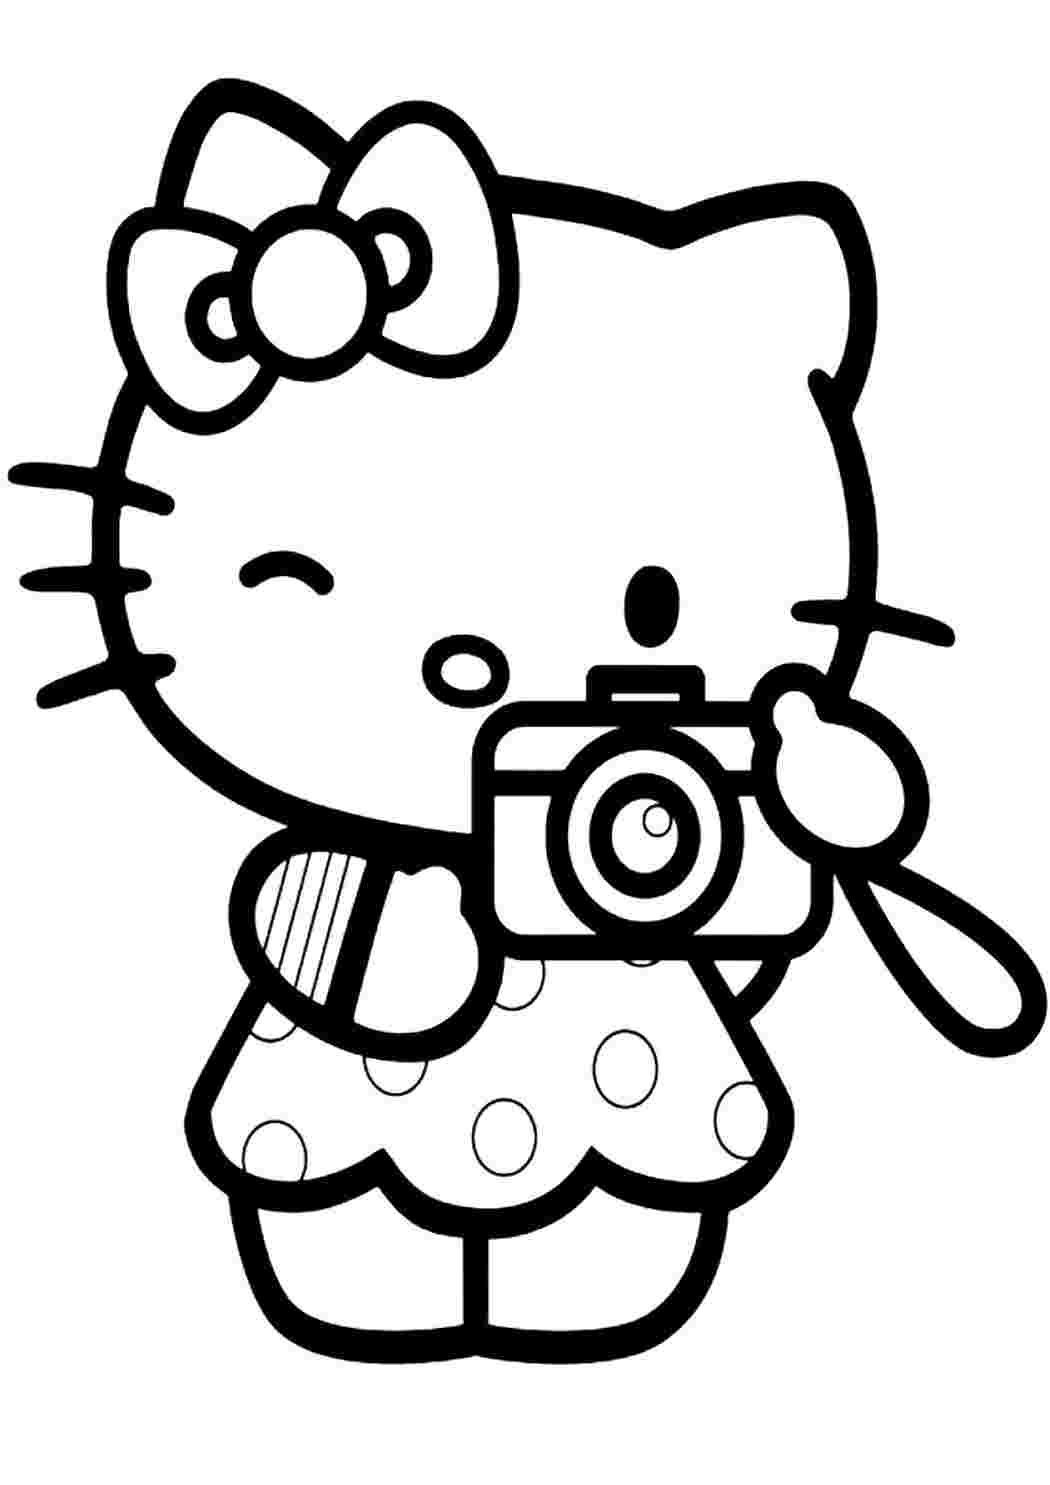 Hello Kitty — немного больше о персонаже